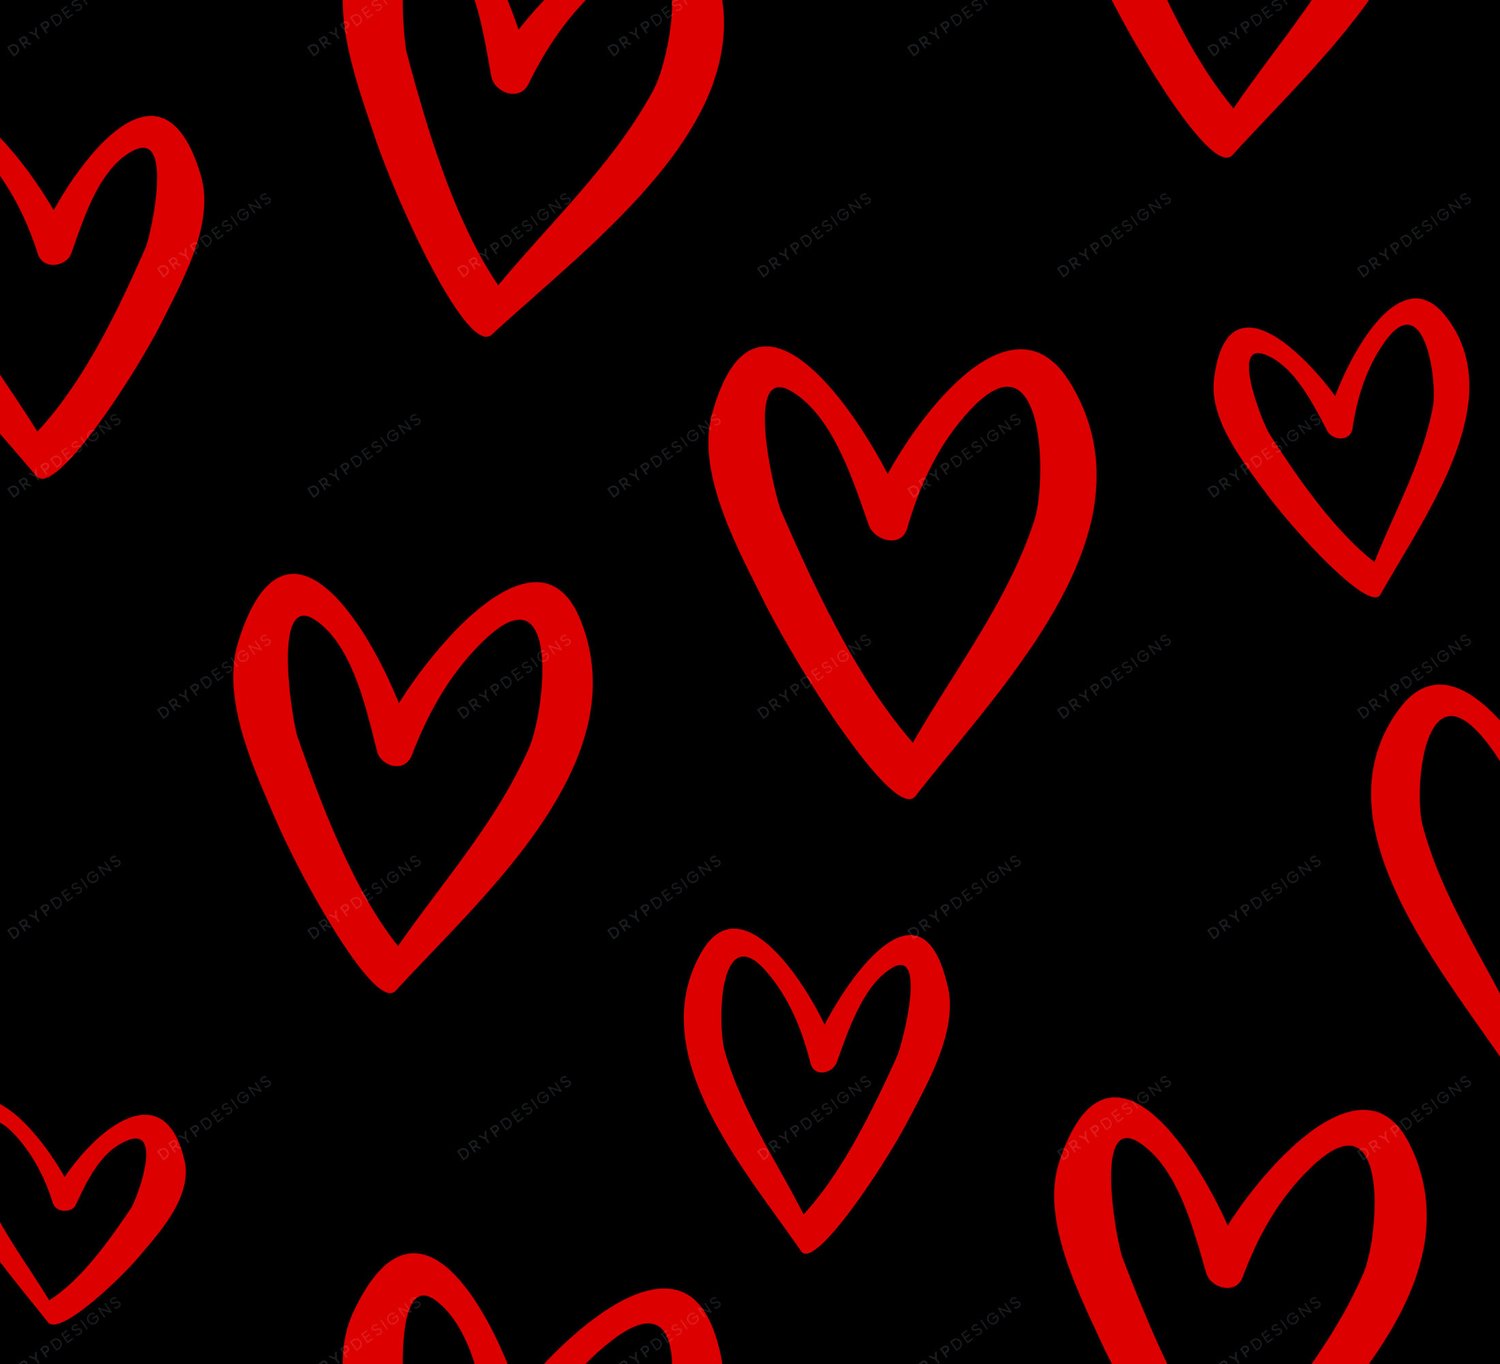 Hình khối đen và trái tim đỏ liên tục PNG sẽ đem lại cảm giác vô cùng sang trọng và tinh tế cho màn hình của bạn. Những hình ảnh trang trí đẹp mắt và liên tục này sẽ làm cho màn hình của bạn trở nên hấp dẫn và ấn tượng hơn bao giờ hết. Hãy cùng khám phá và trang trí màn hình máy tính của bạn ngay hôm nay.